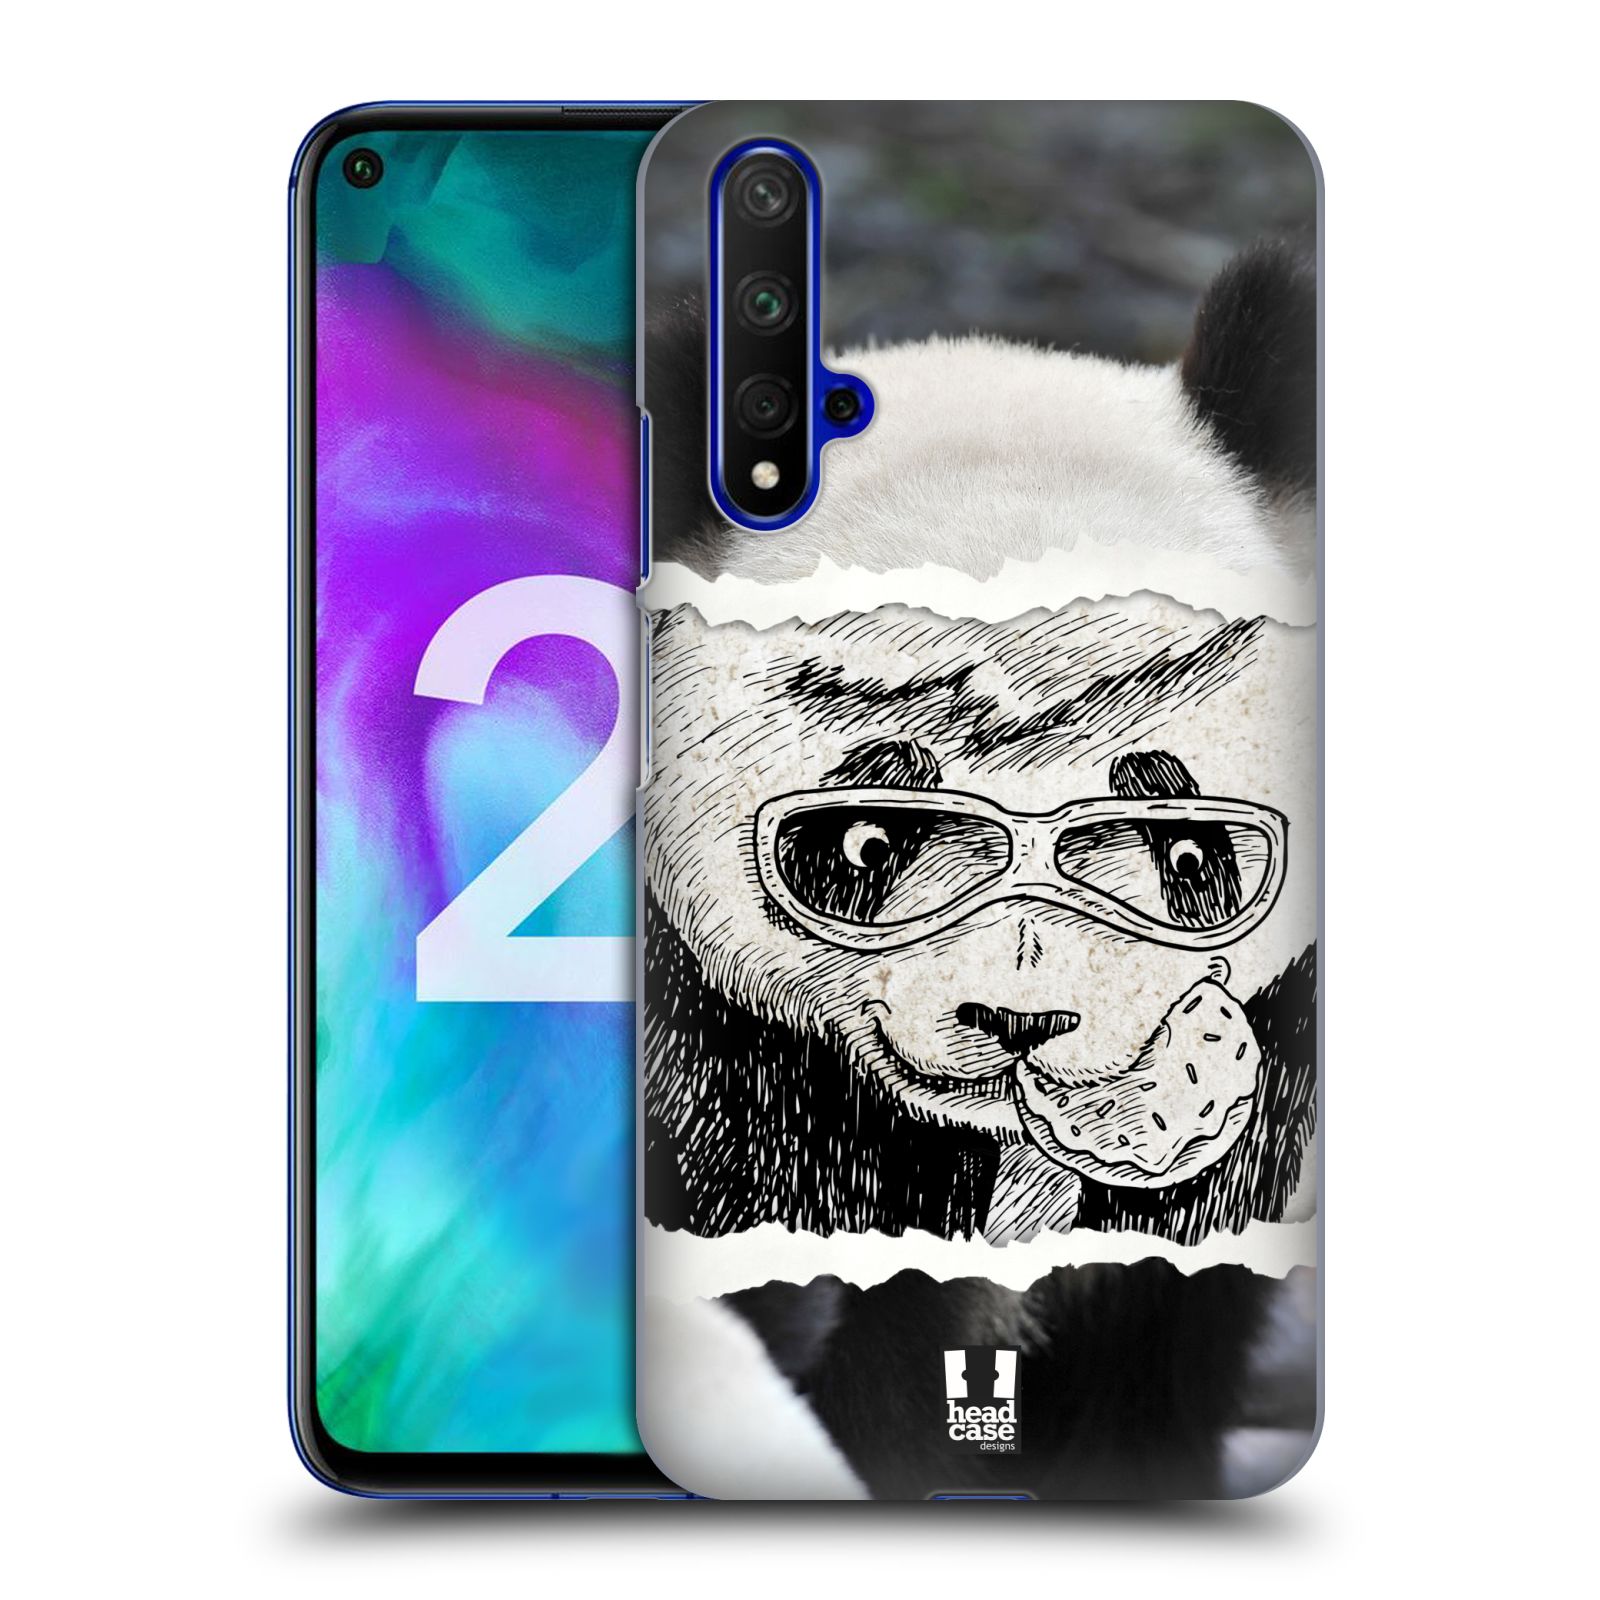 Pouzdro na mobil Honor 20 - HEAD CASE - vzor zvířata koláž roztomilá panda